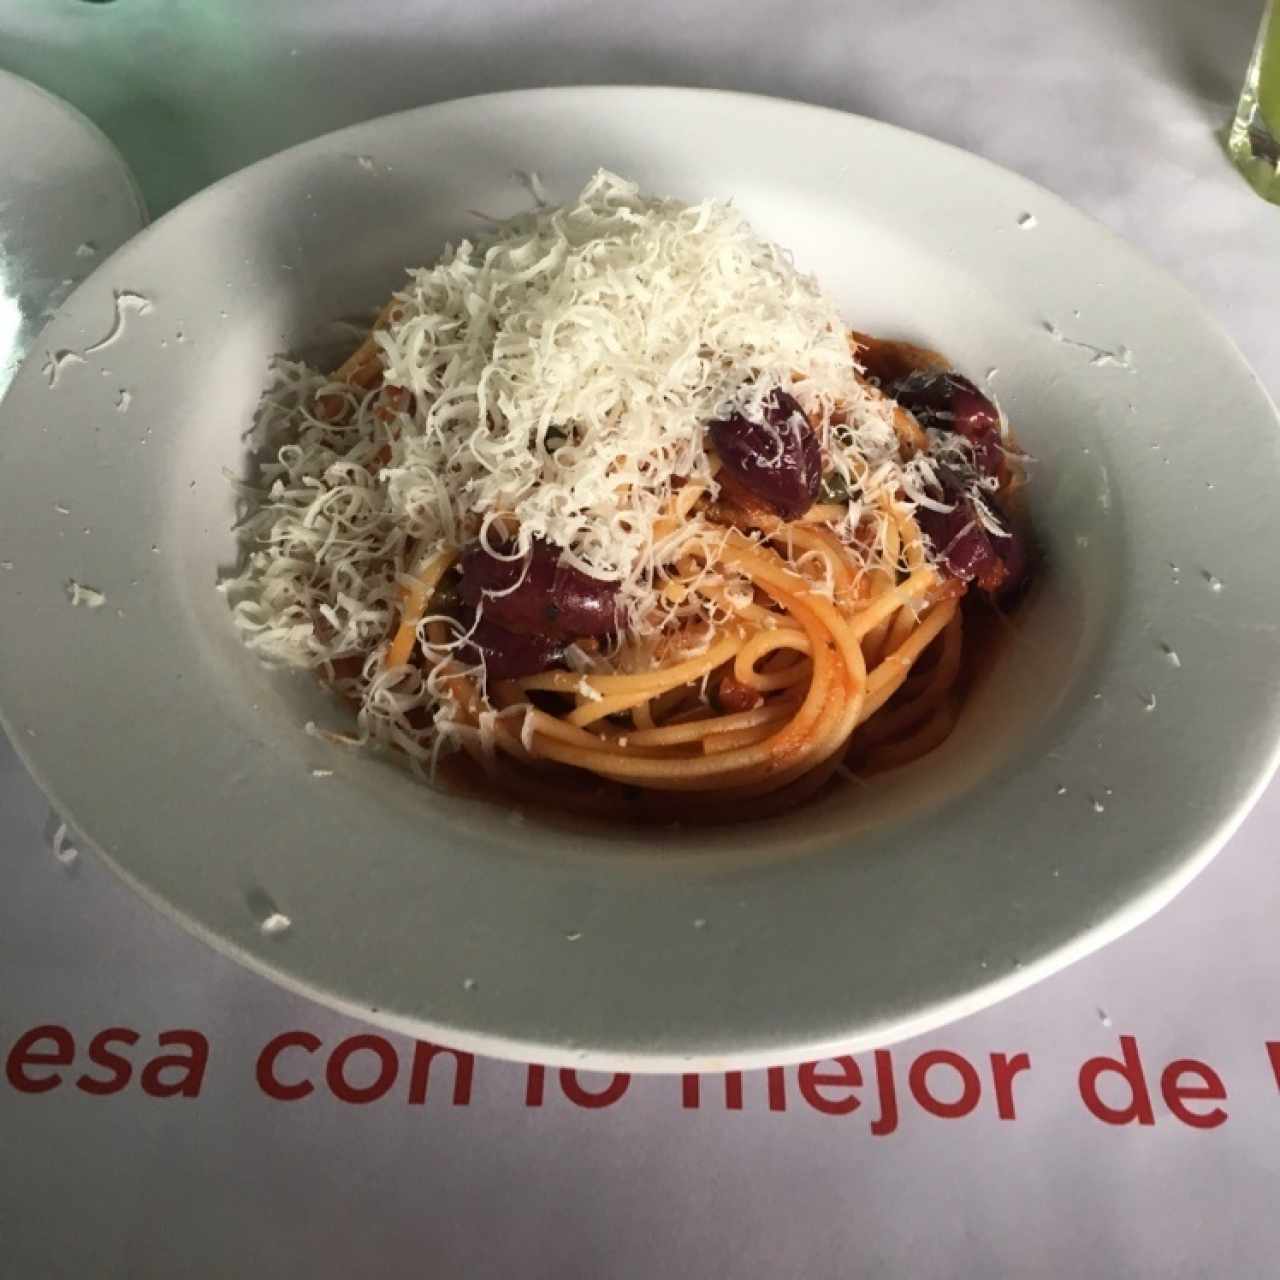 Spaghetti alla puttanesca - media porción